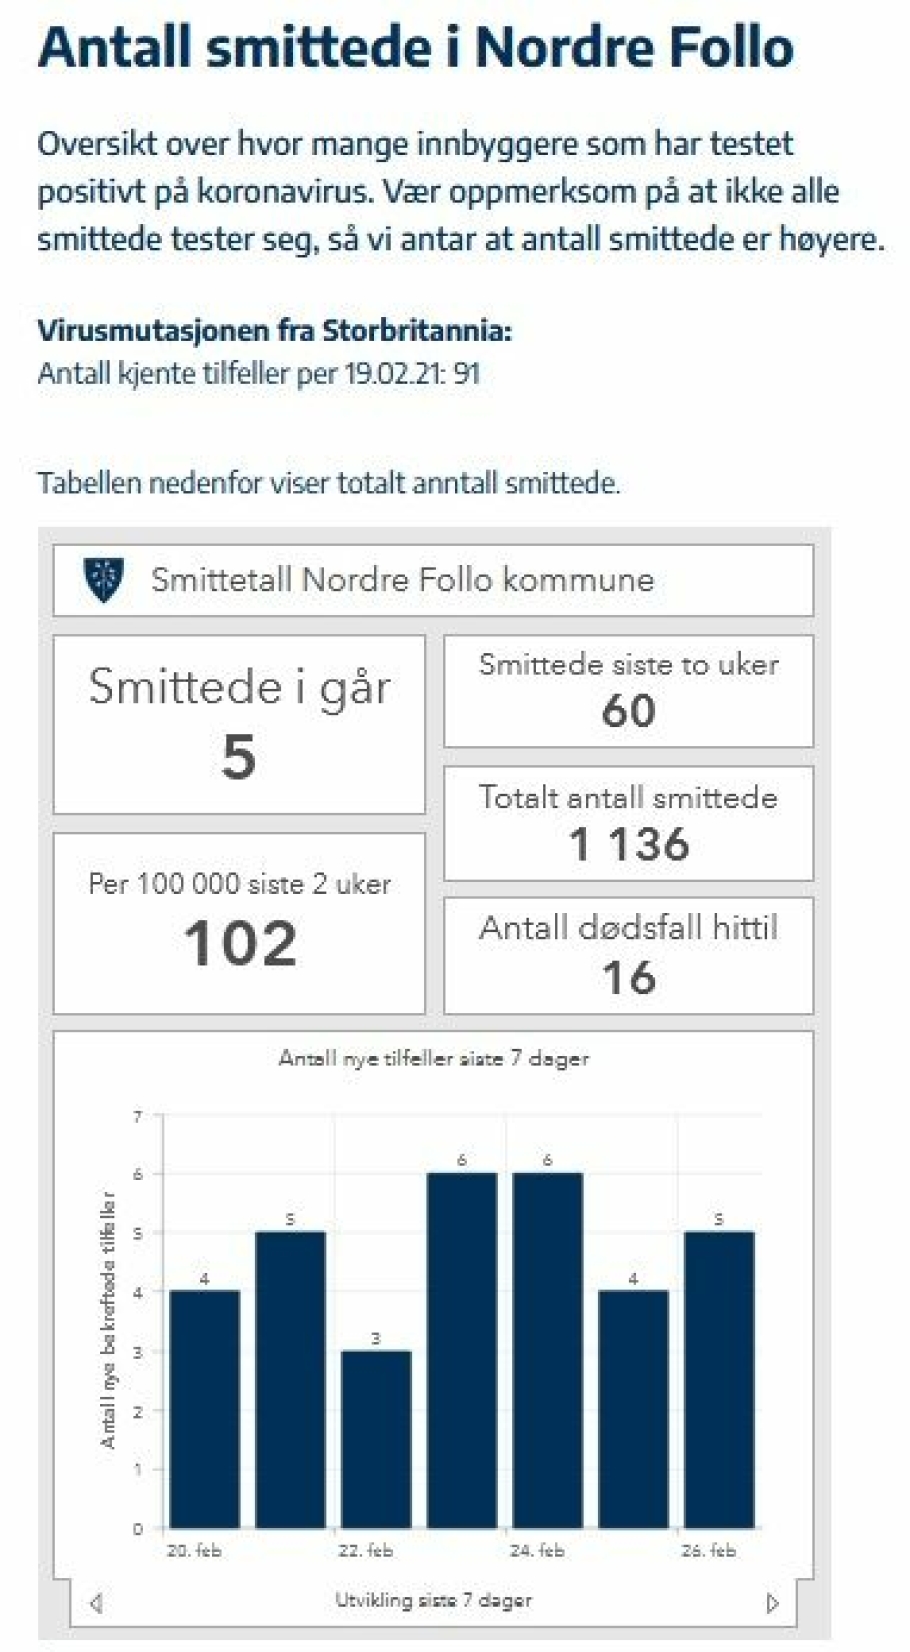 SMITTETALL PER FREDAG: Den siste statistikken over smittetallene i Nordre Follo er per fredag 26. februar.